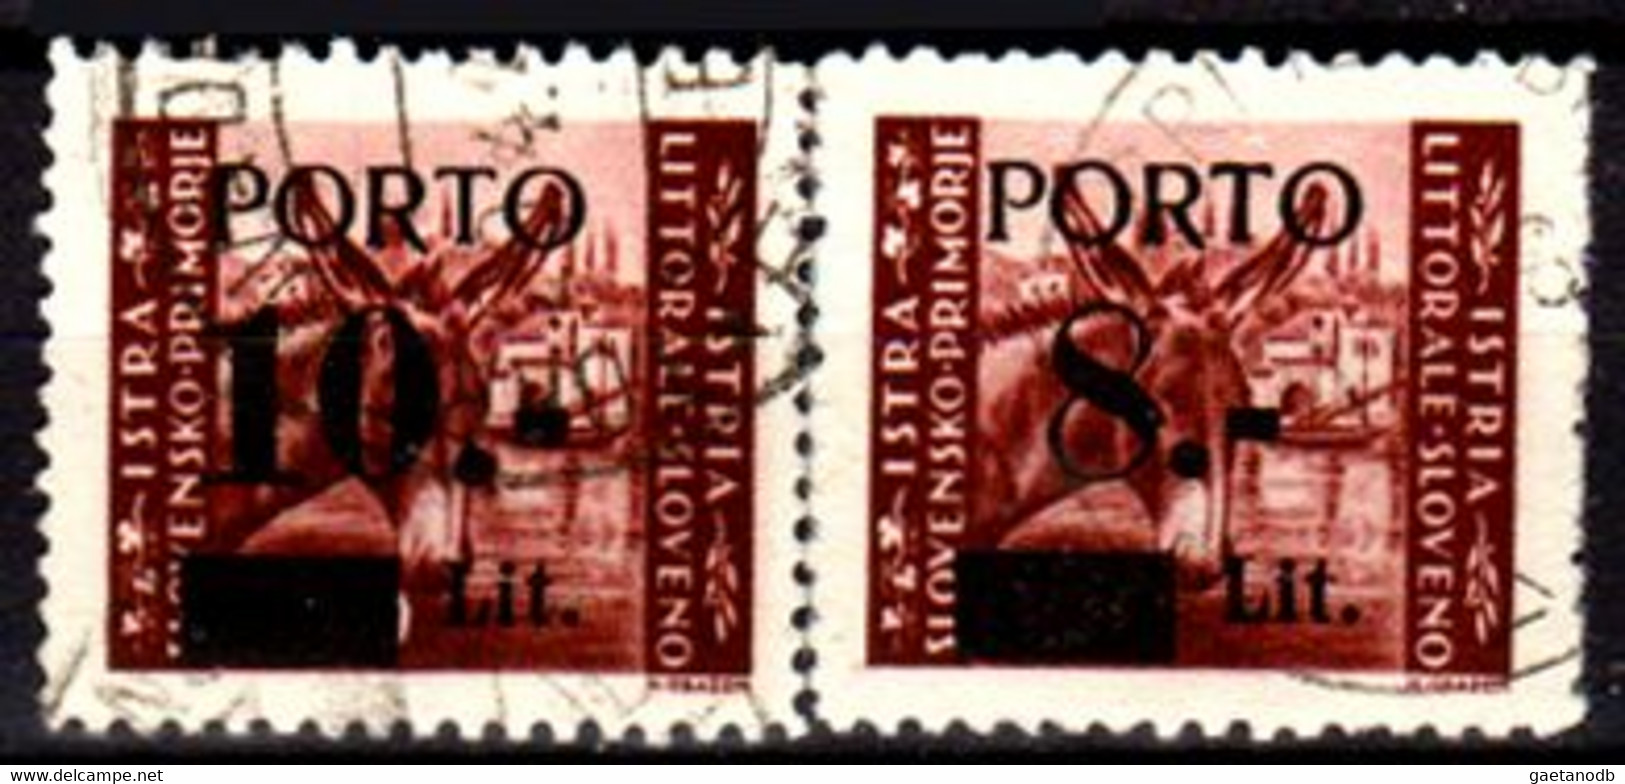 Italia-G-0981 - Occupazione Jugoslava: Taxe,3,4 Del 1945 (o) Used - Qualità A Vostro Giudizio. - Yugoslavian Occ.: Istria